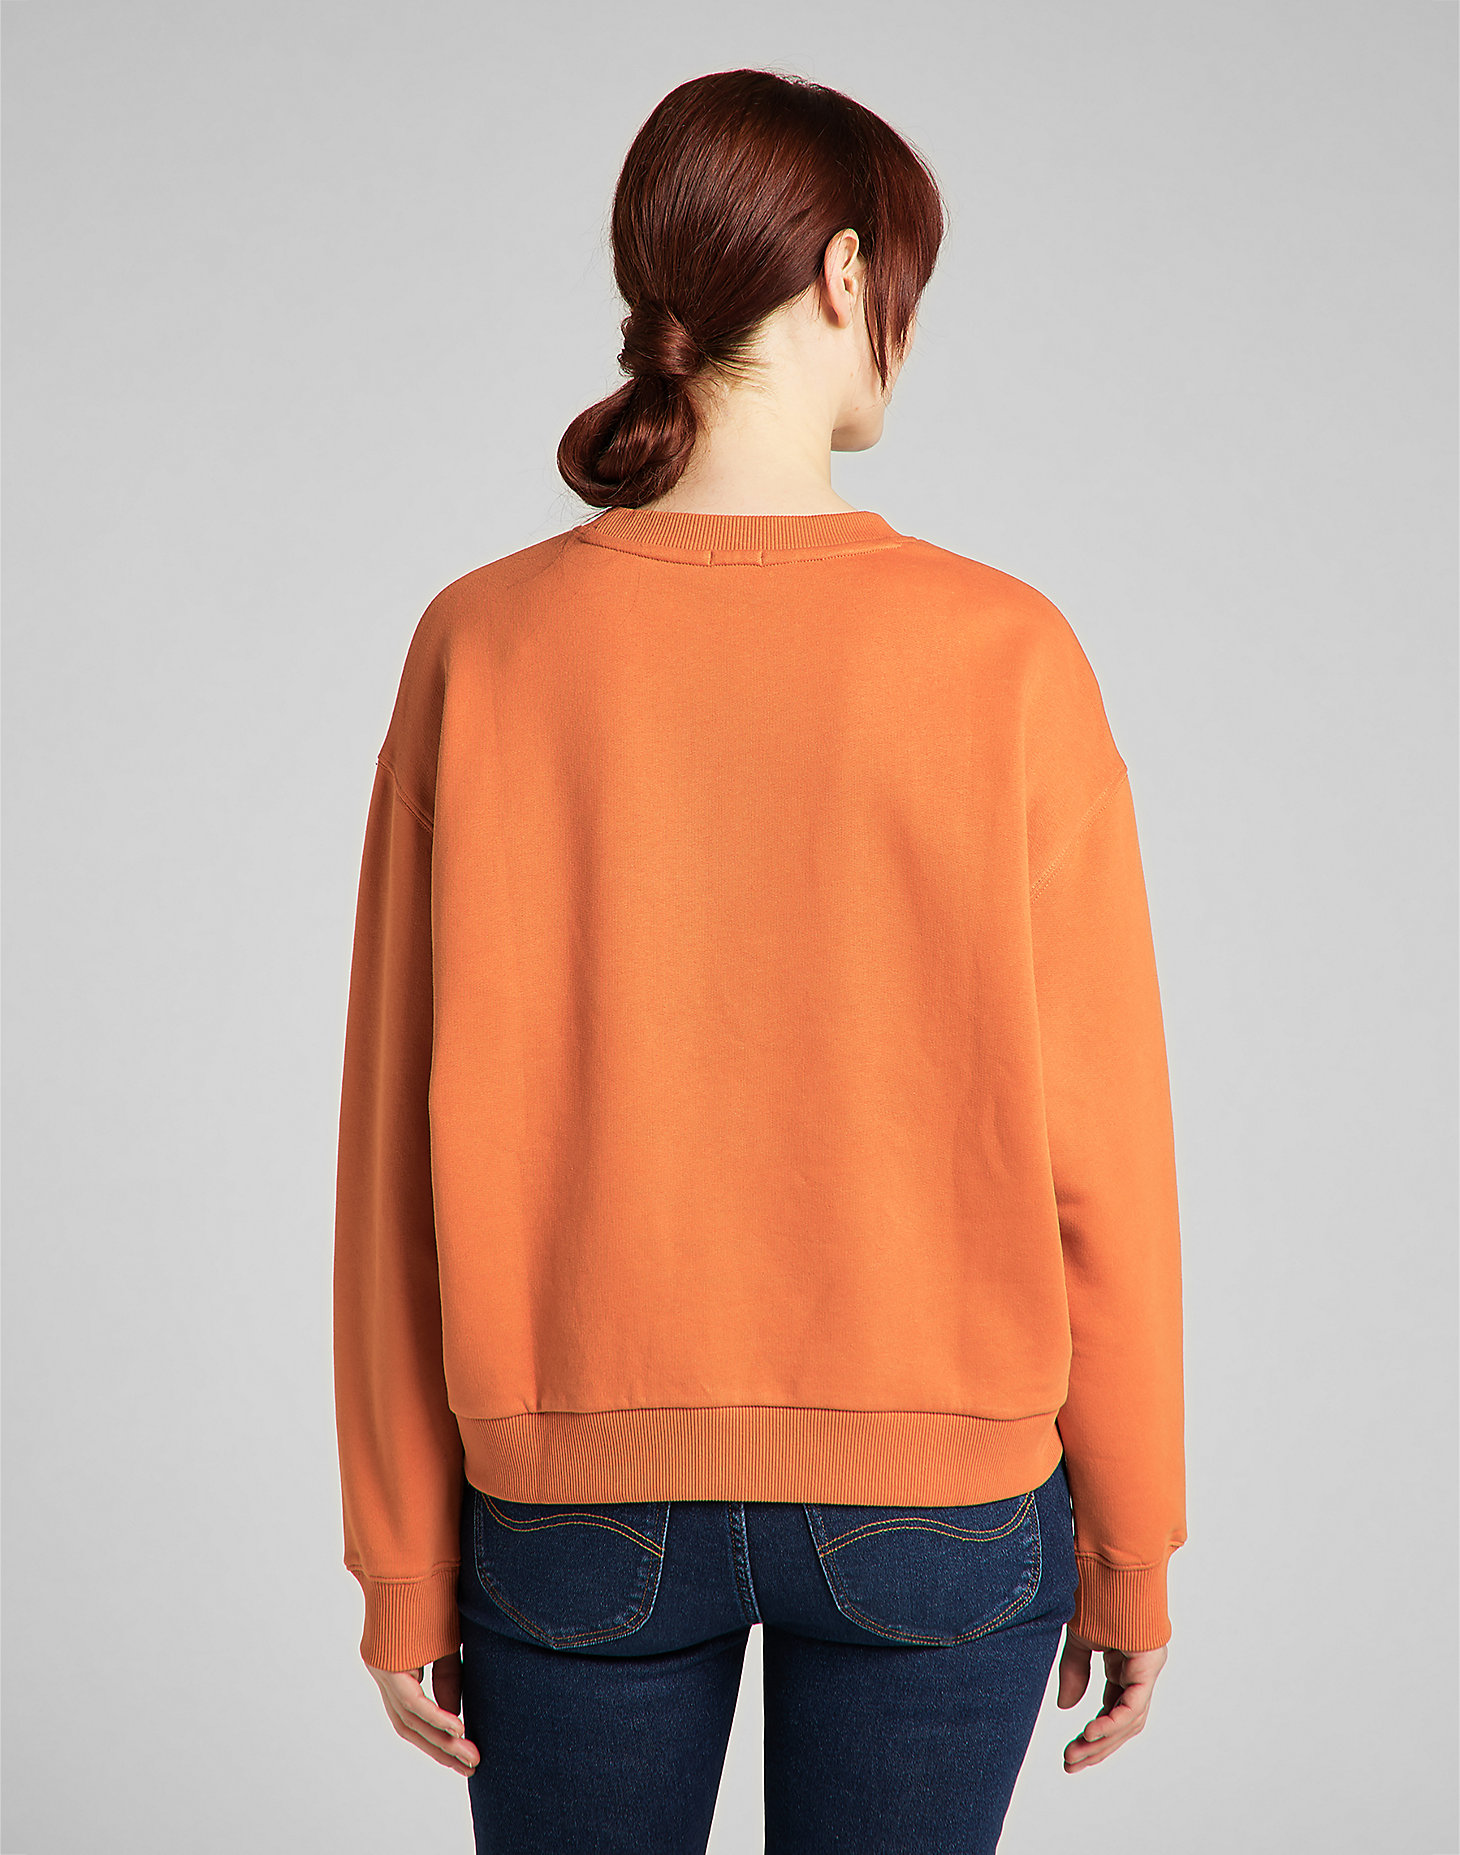 Sweatshirt in Desert Orange alternative view 1